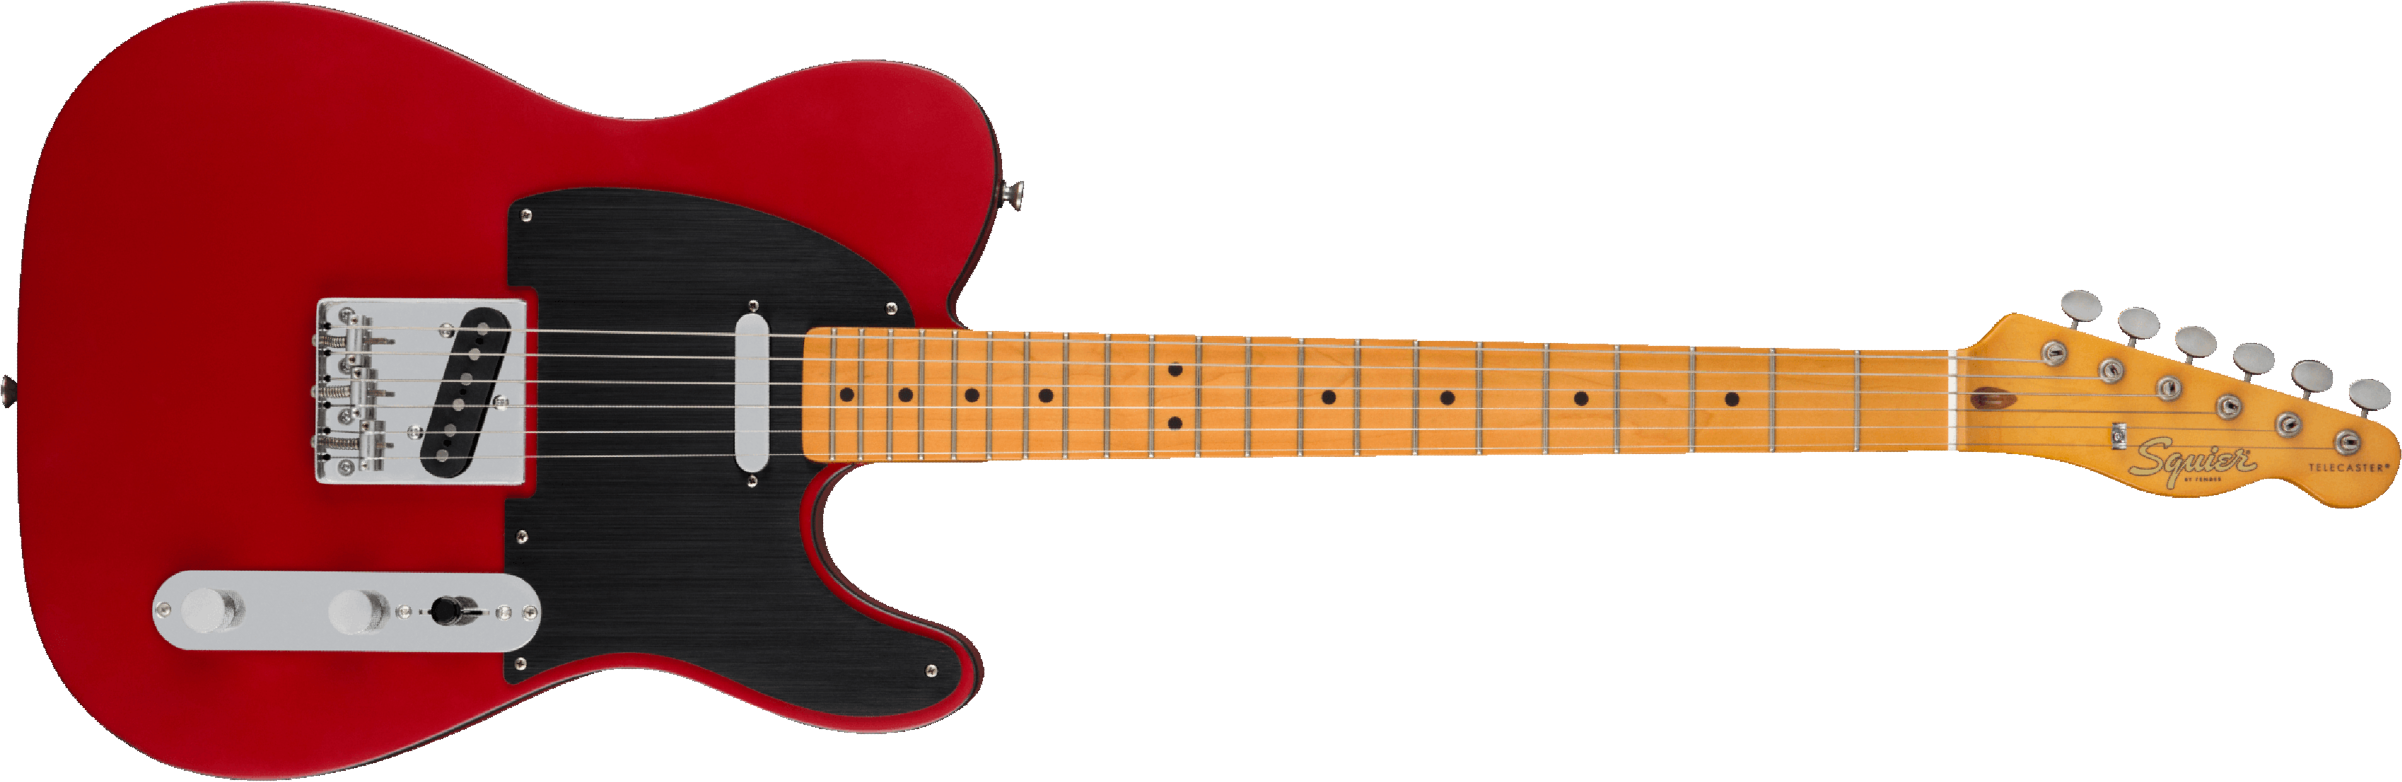 Squier Tele 40th Anniversary Vintage Edition Mn - Satin Dakota Red - Televorm elektrische gitaar - Main picture